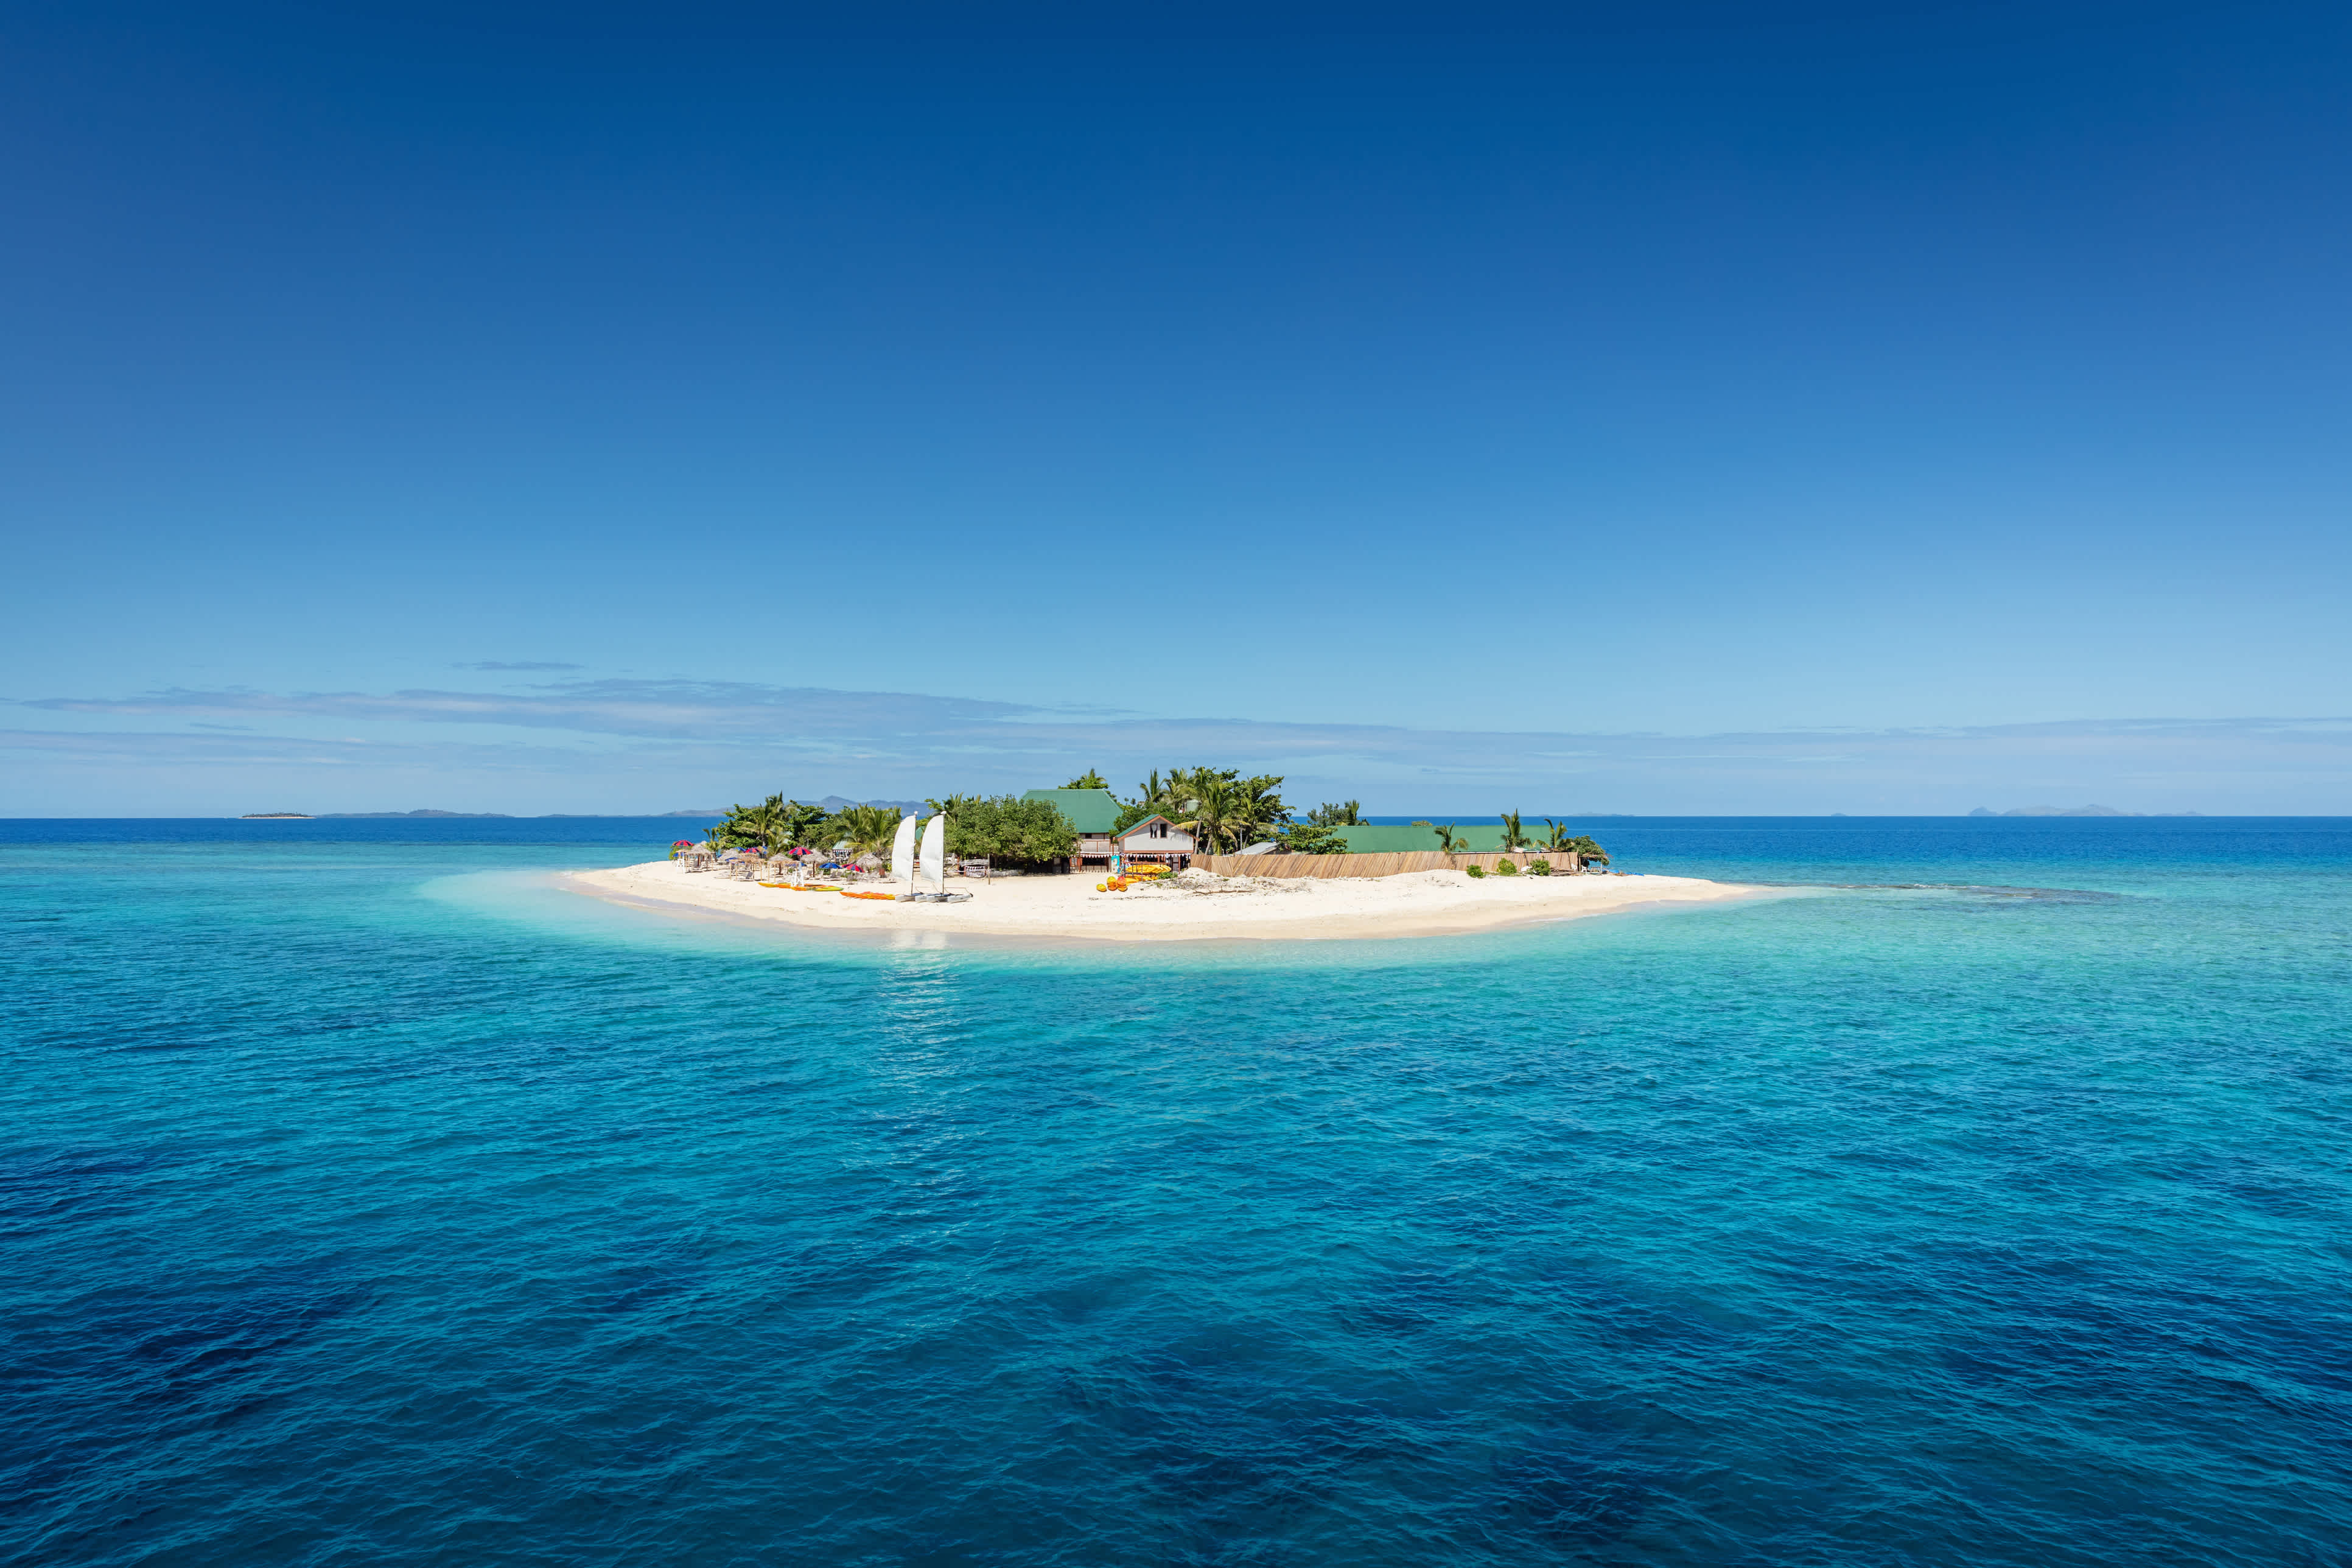 Schöne kleine Insel mitten im Südpazifik mit Strandhütten, Liegestühlen, Palmen, umgeben von wunderschönem klarem türkisfarbenem Wasser. Inselchen, Mamanuca-Inseln, Fidschi, Melanesien